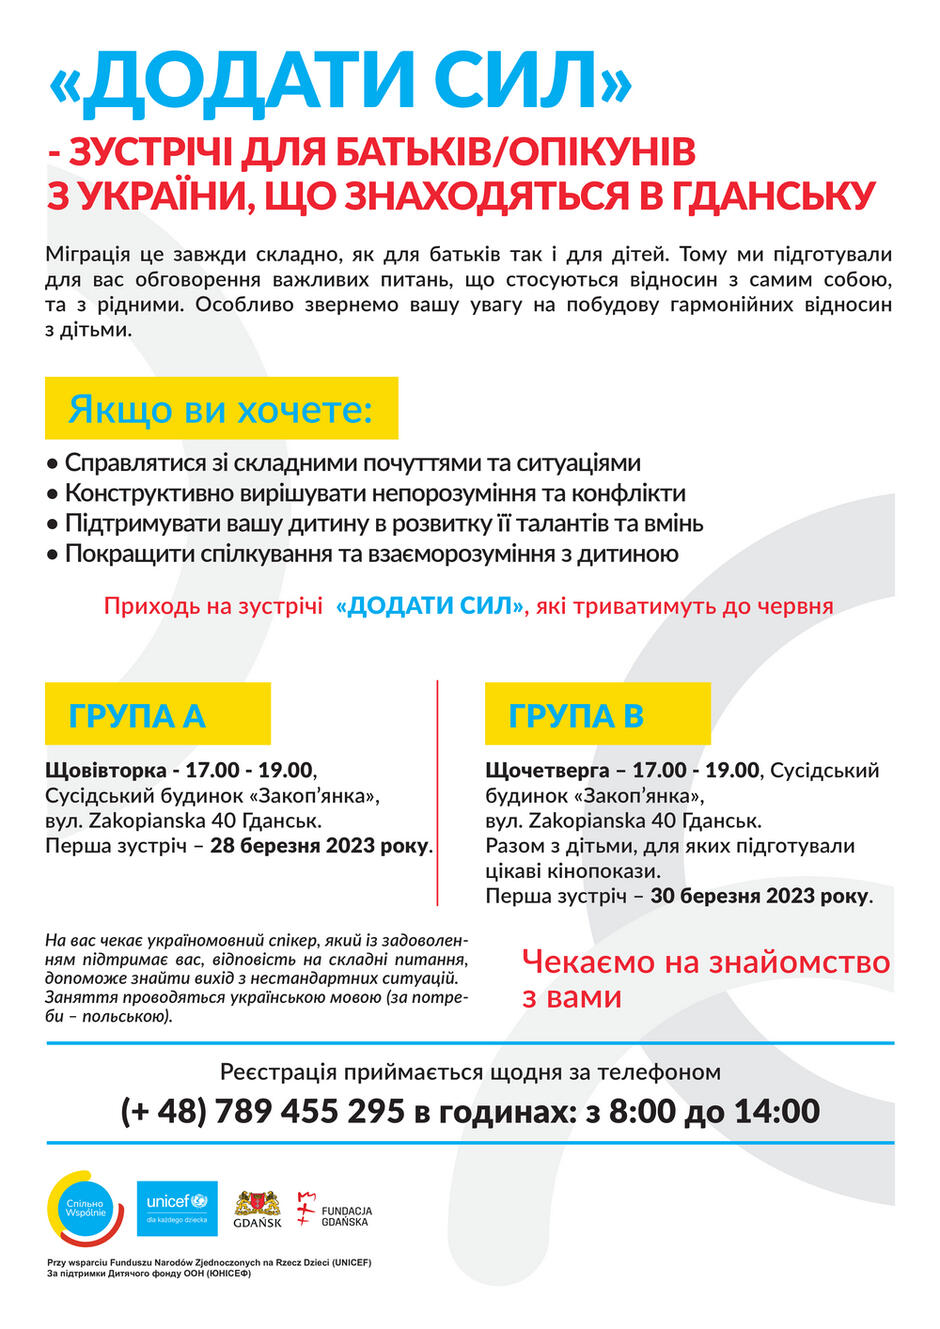 plakat_informacyjny_spotkan_dodac_sil_wersja_po_ukrainsku_